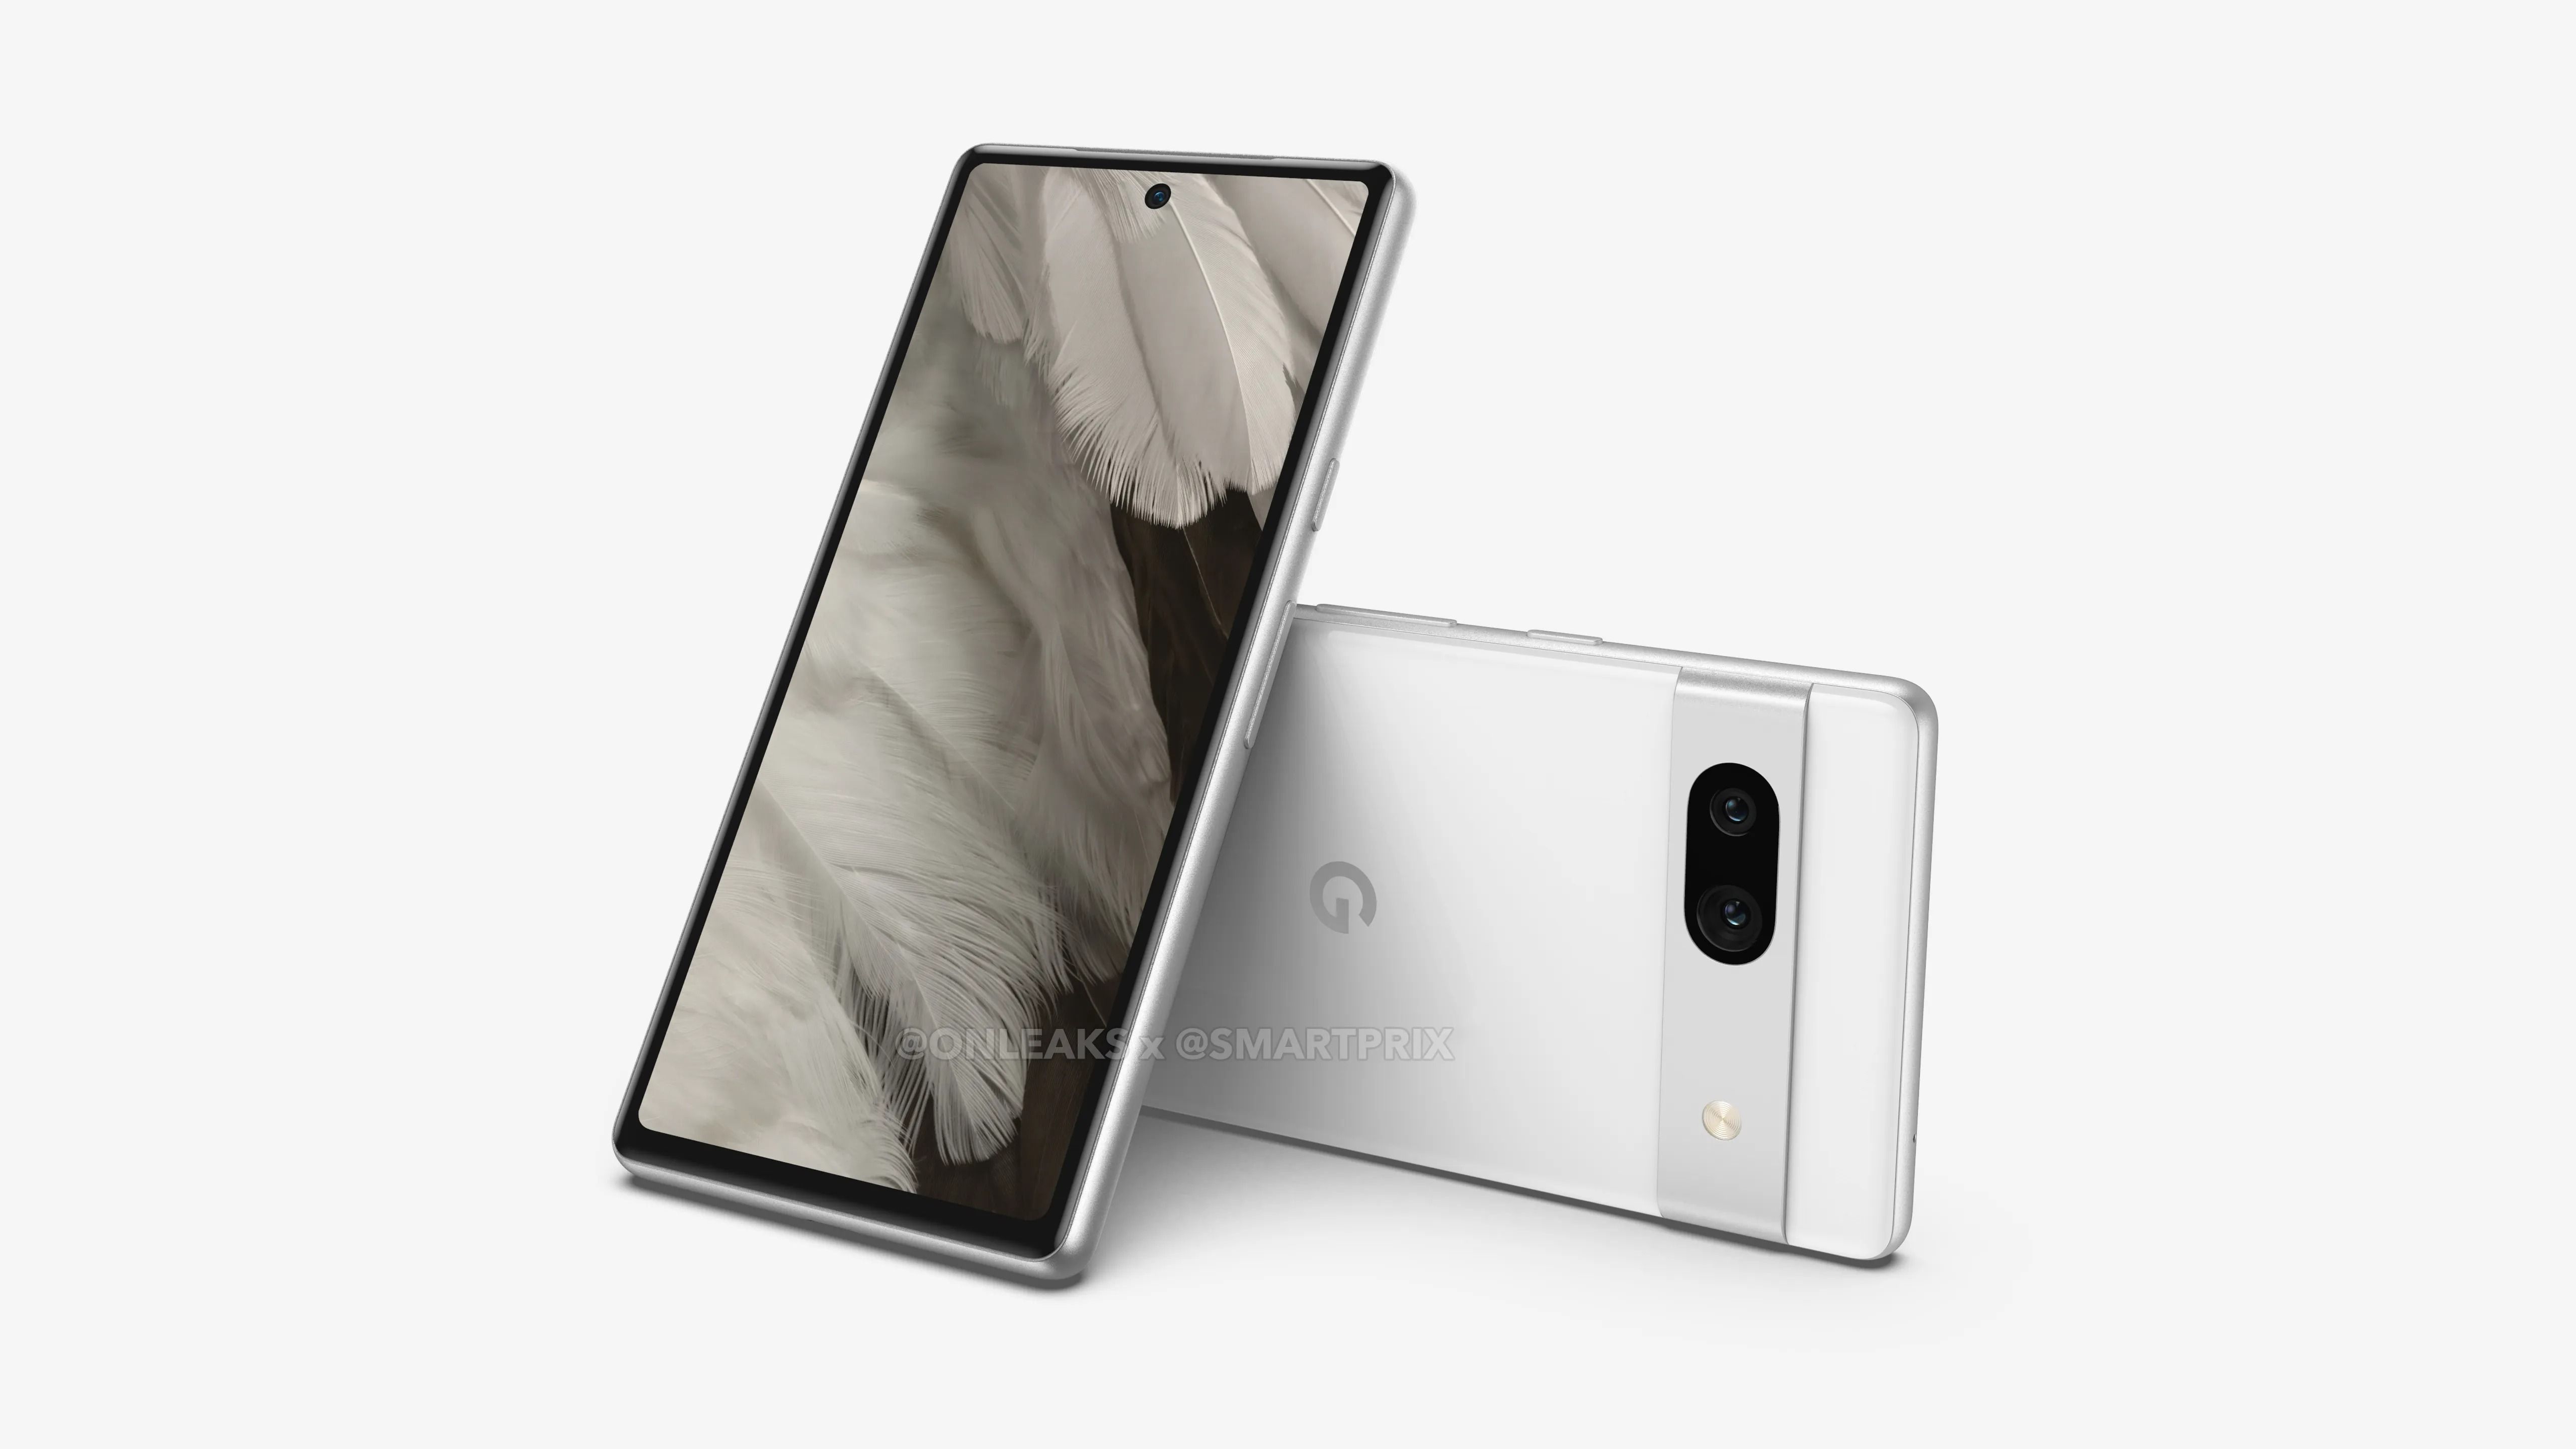 Render bagian depan dan belakang Pixel 7a berwarna putih.  Bagian belakang ponsel ditampilkan secara horizontal sedangkan bagian depannya vertikal.